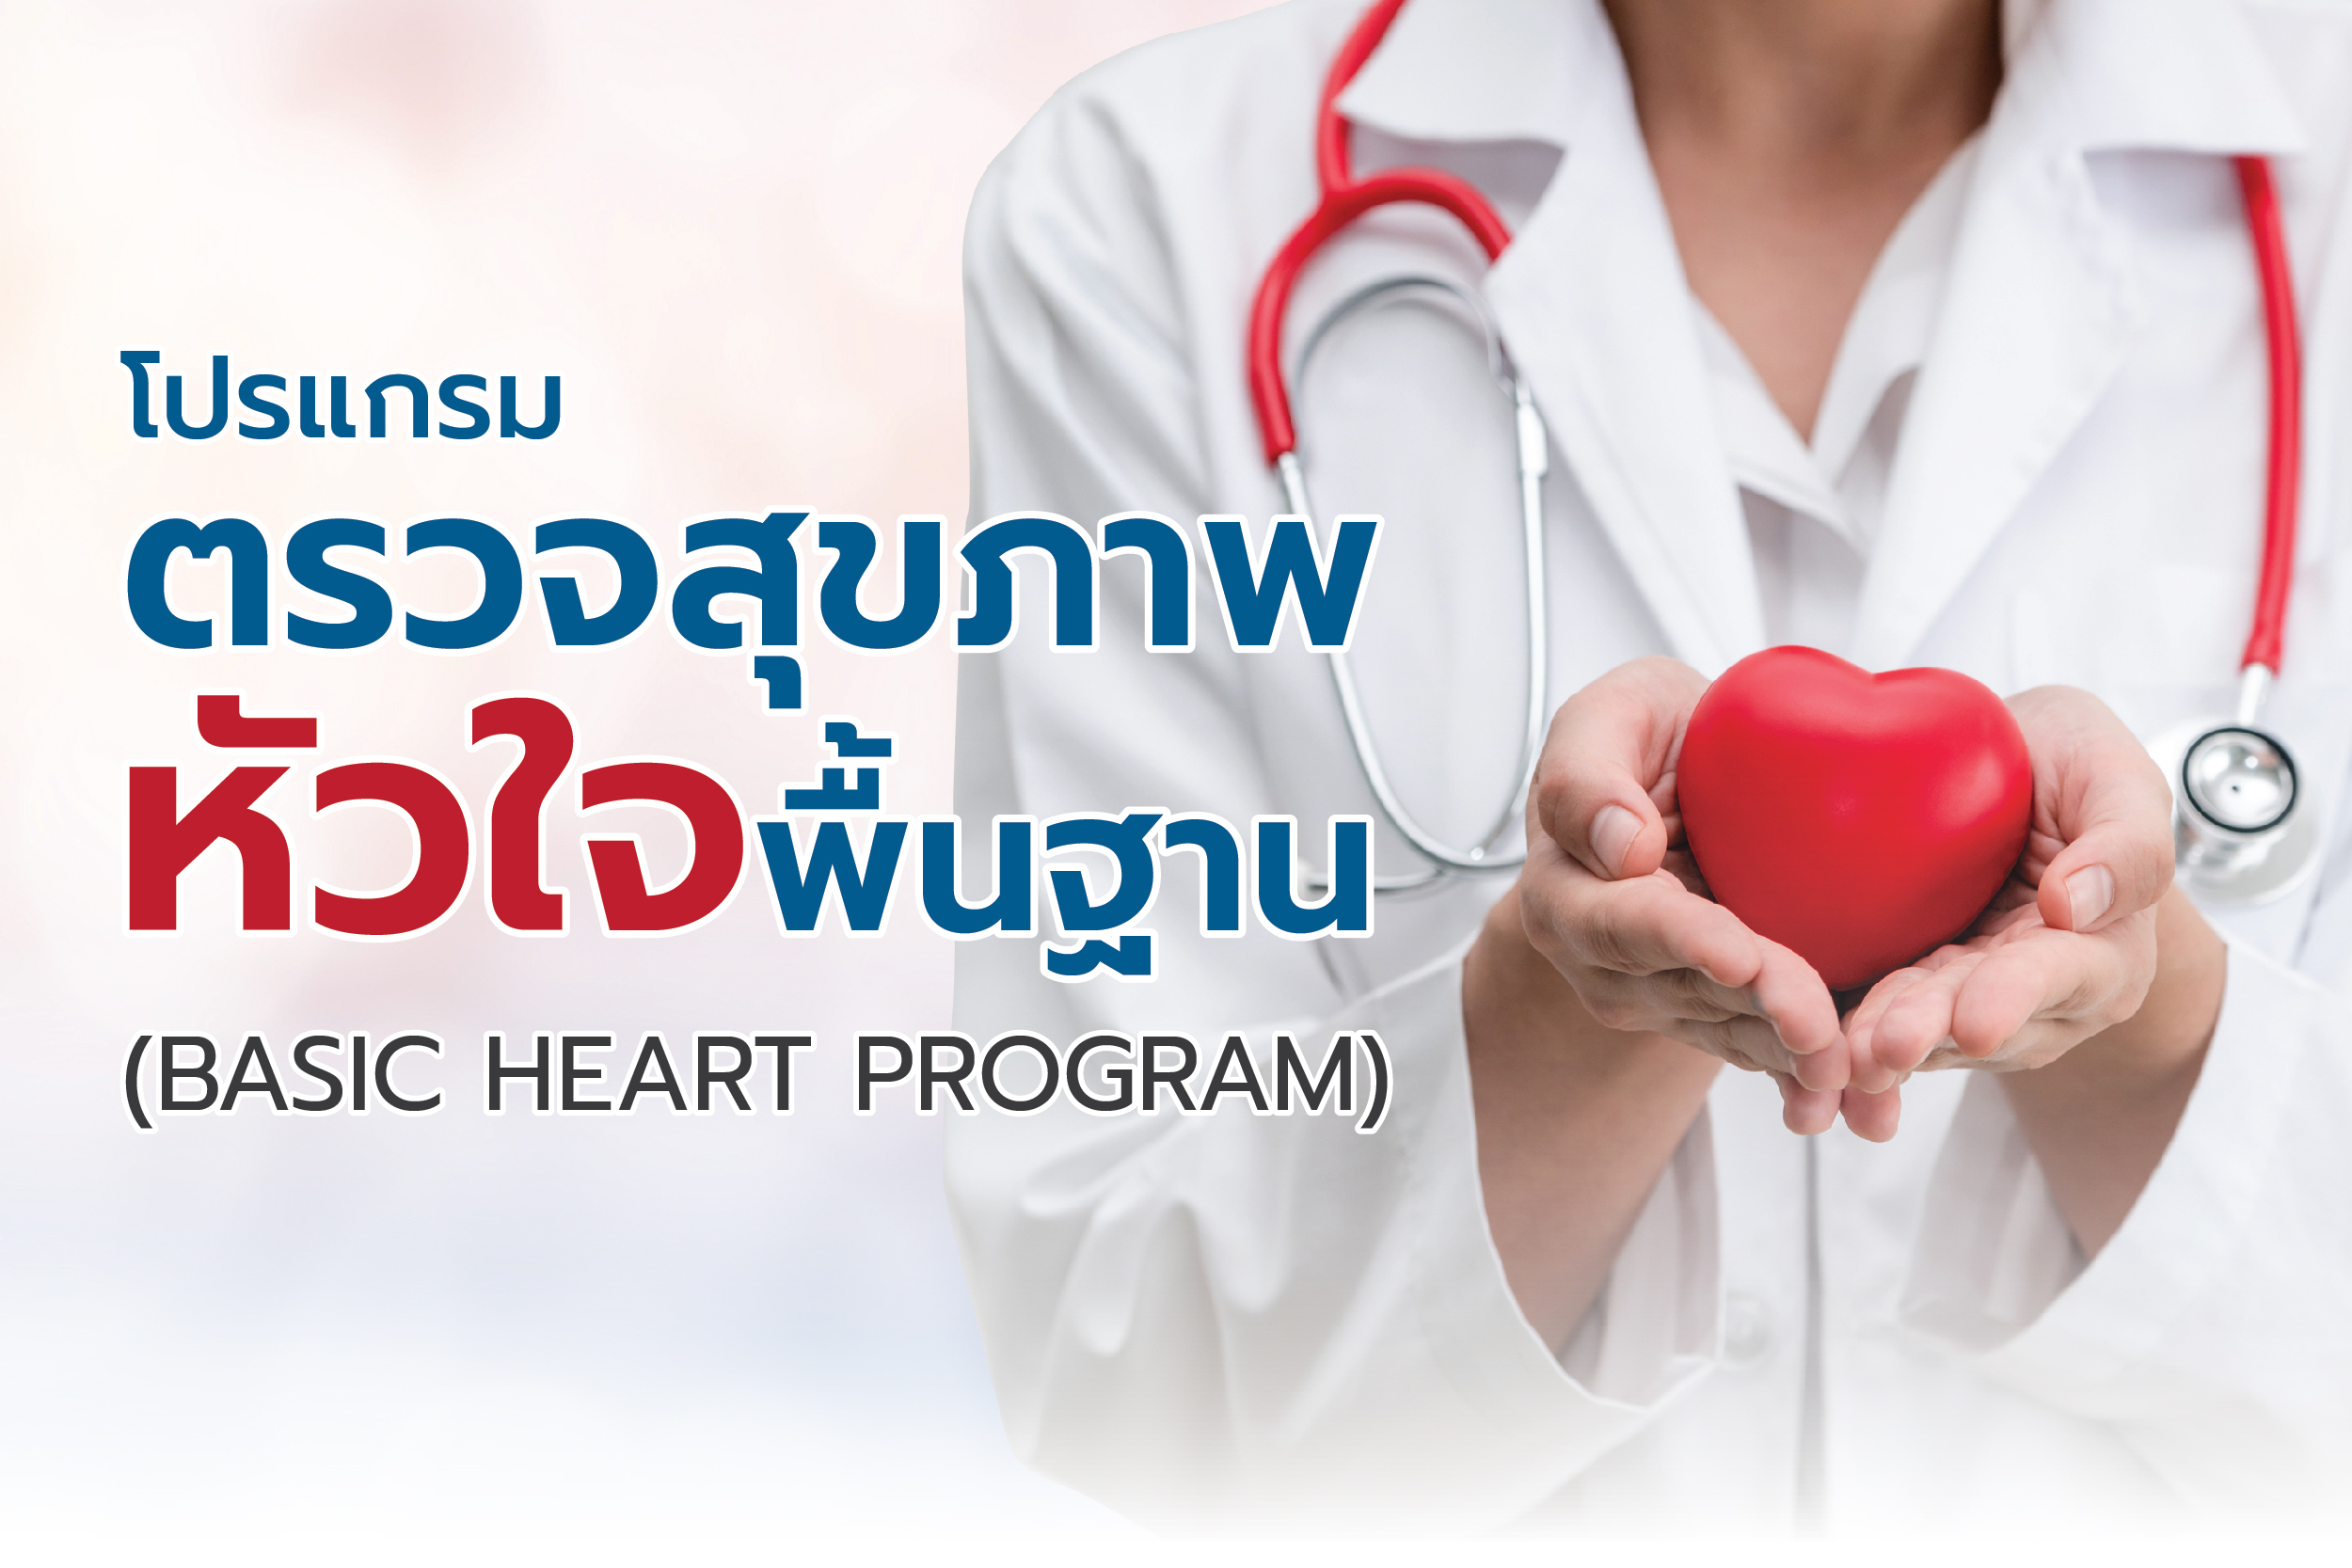 โปรแกรมตรวจสุขภาพหัวใจพื้นฐาน